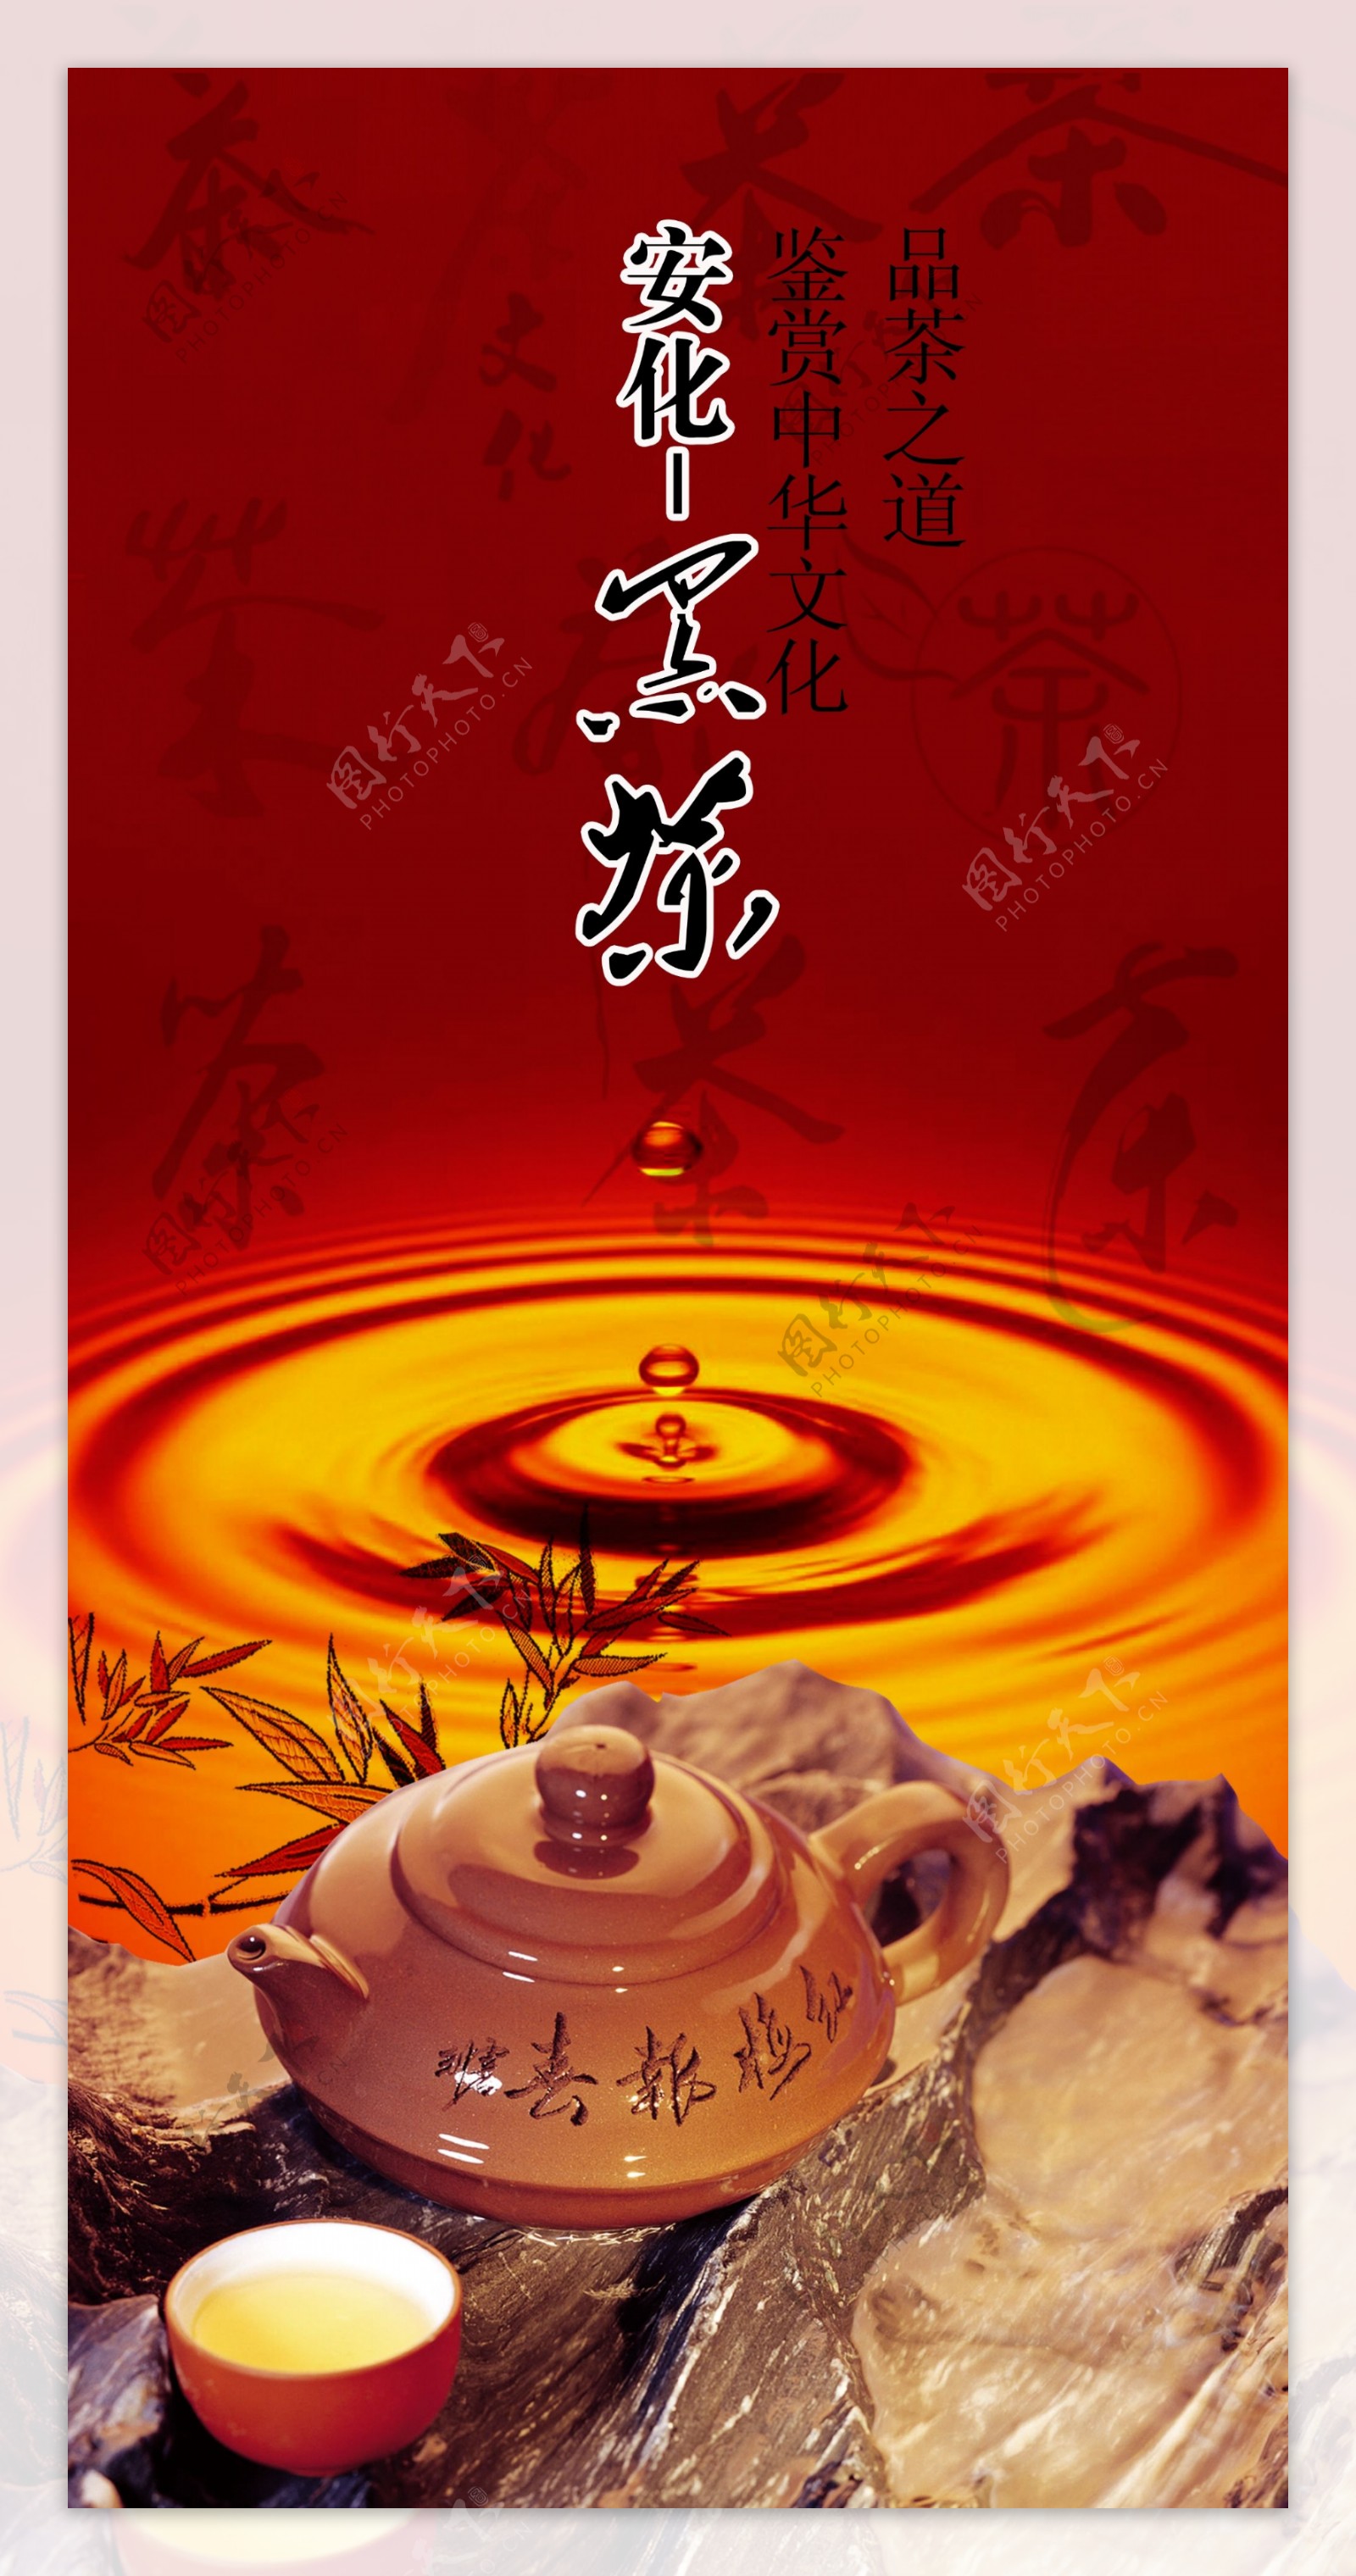 安华黑茶广告图片